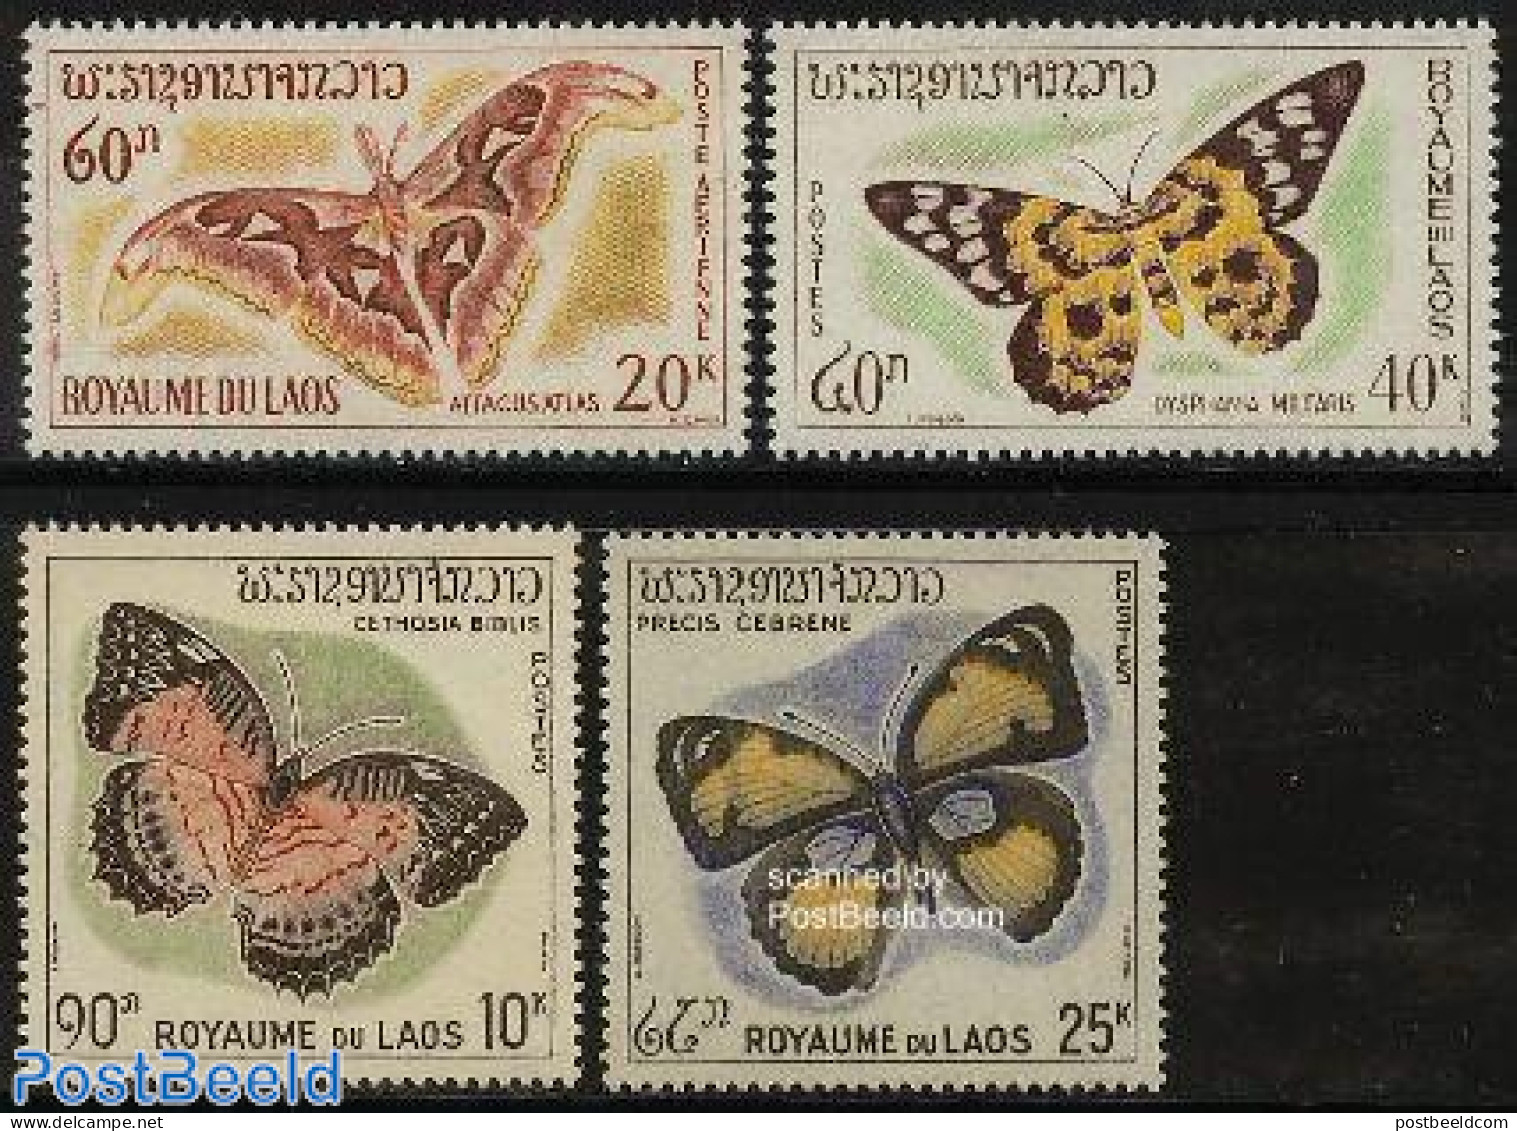 Laos 1965 Butterflies 4v, Mint NH, Nature - Butterflies - Laos